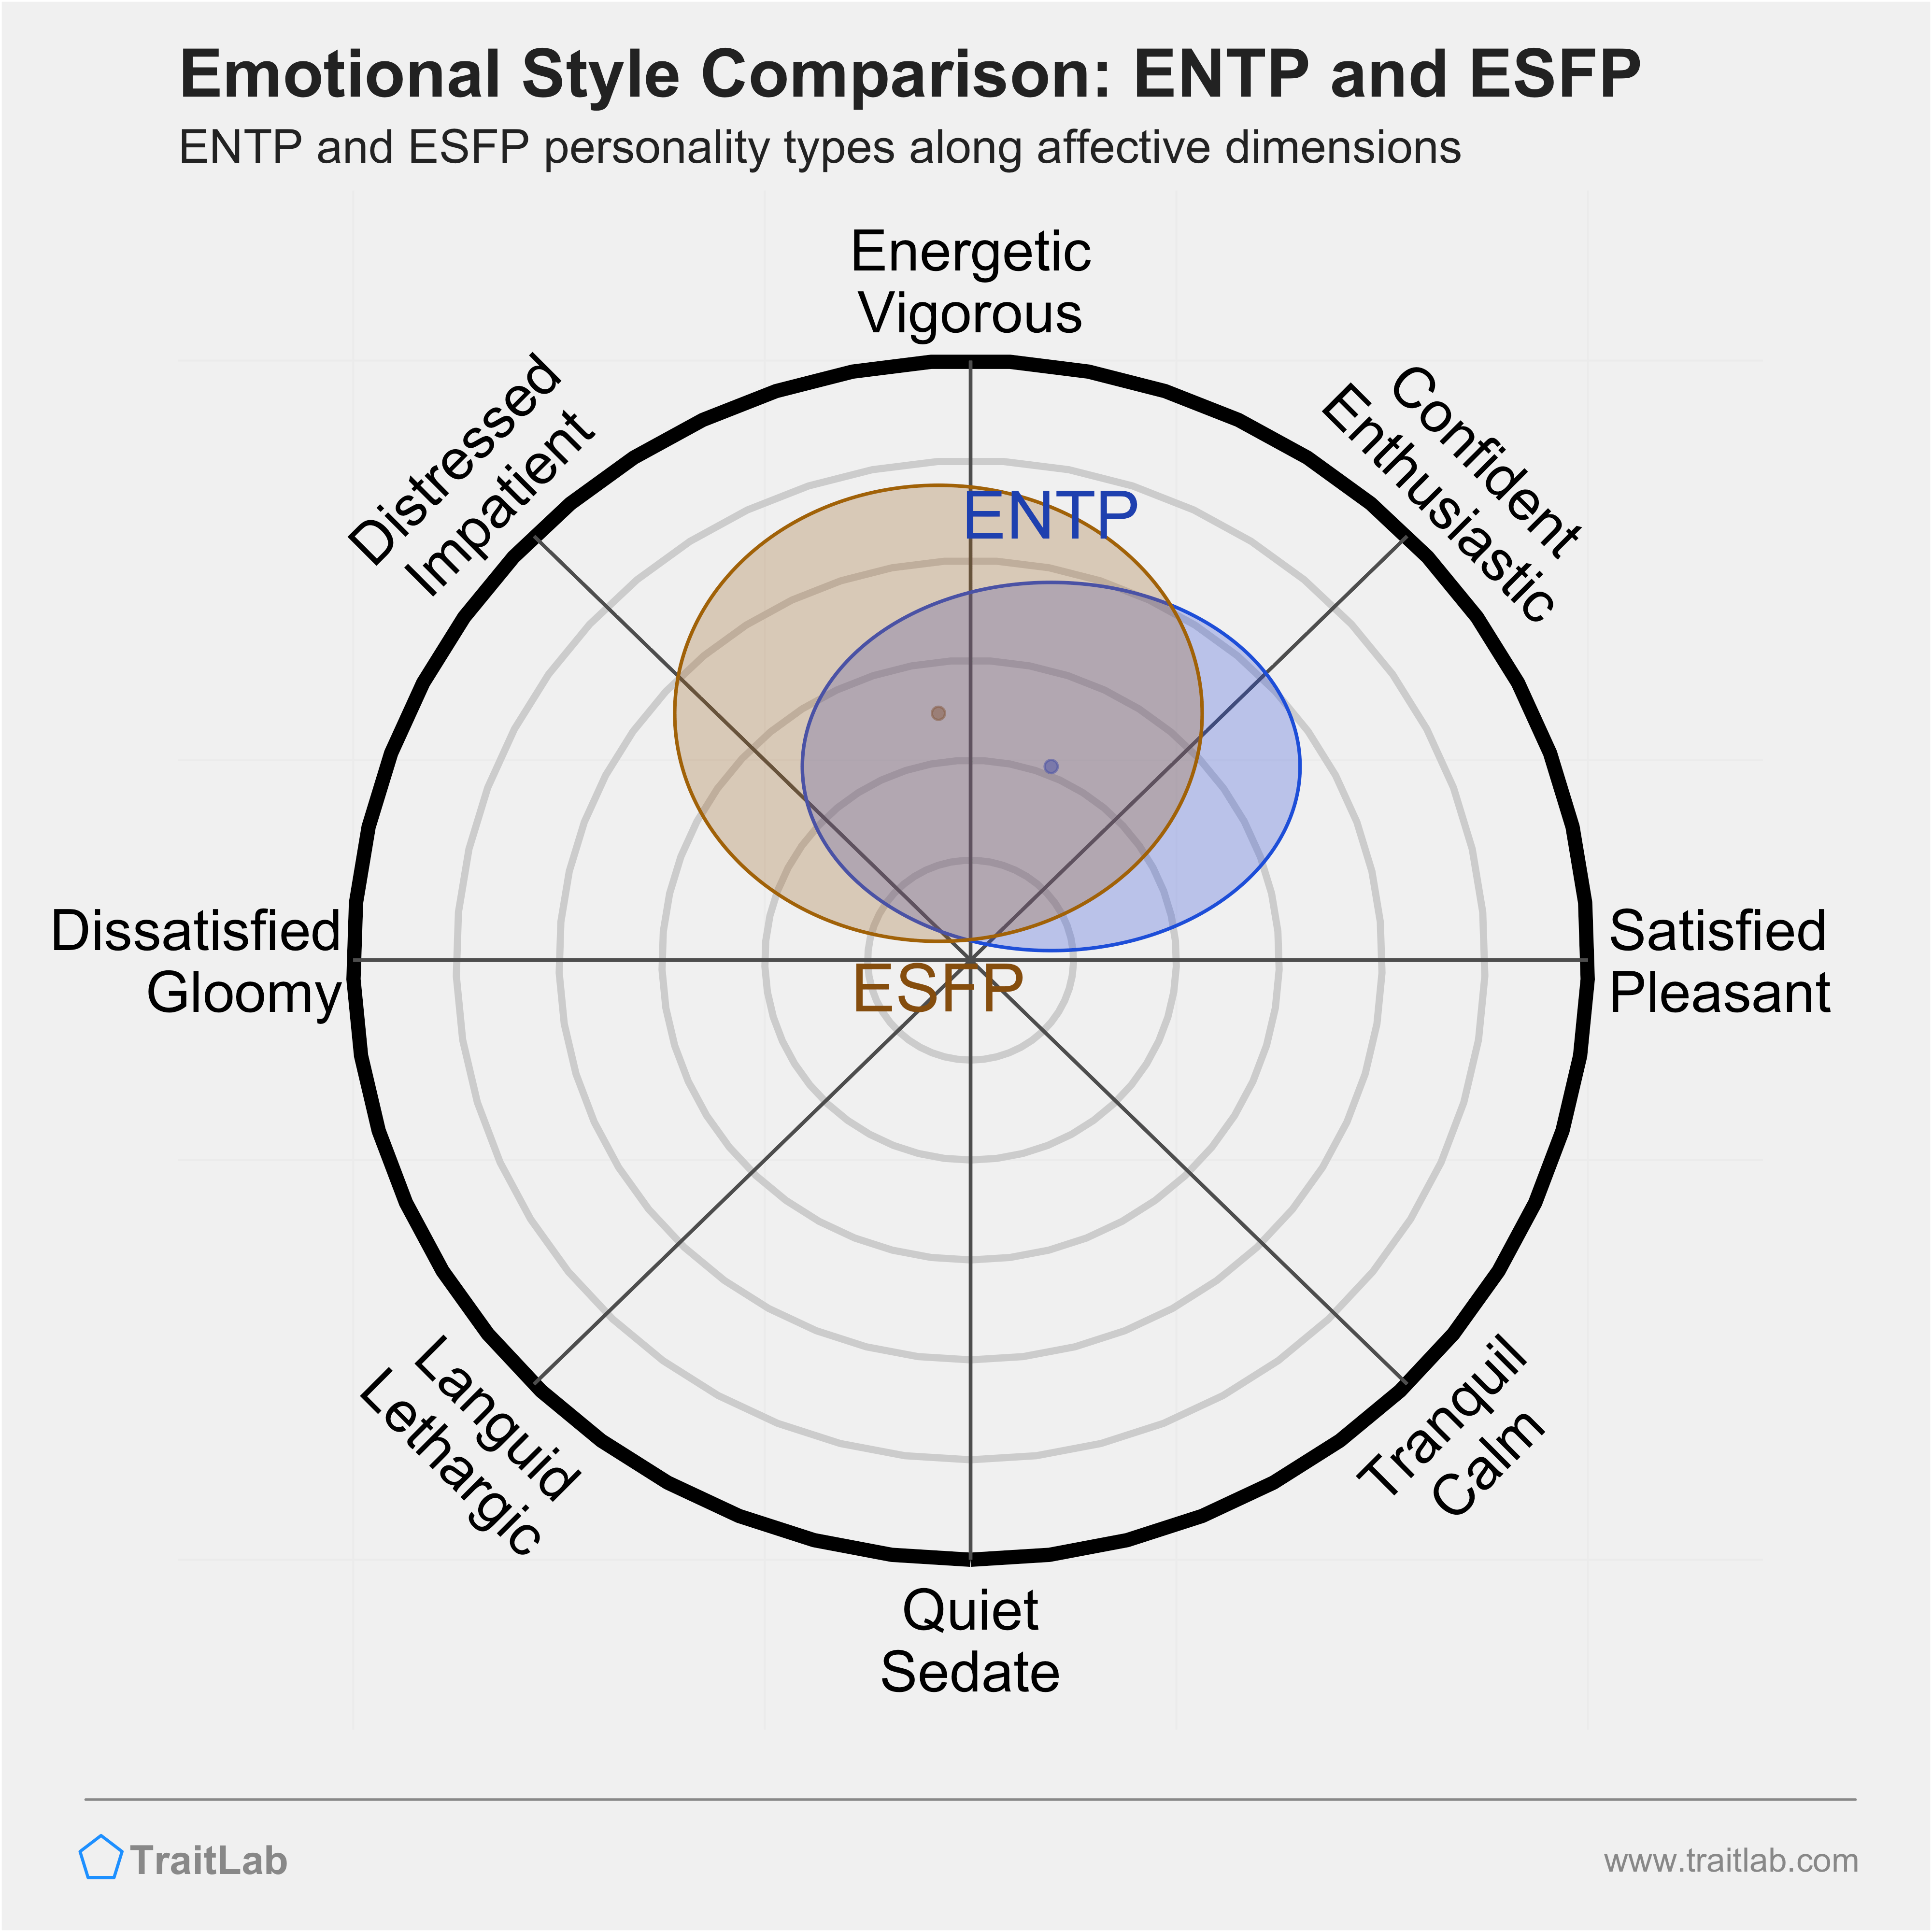 ENTP and ESFP comparison across emotional (affective) dimensions